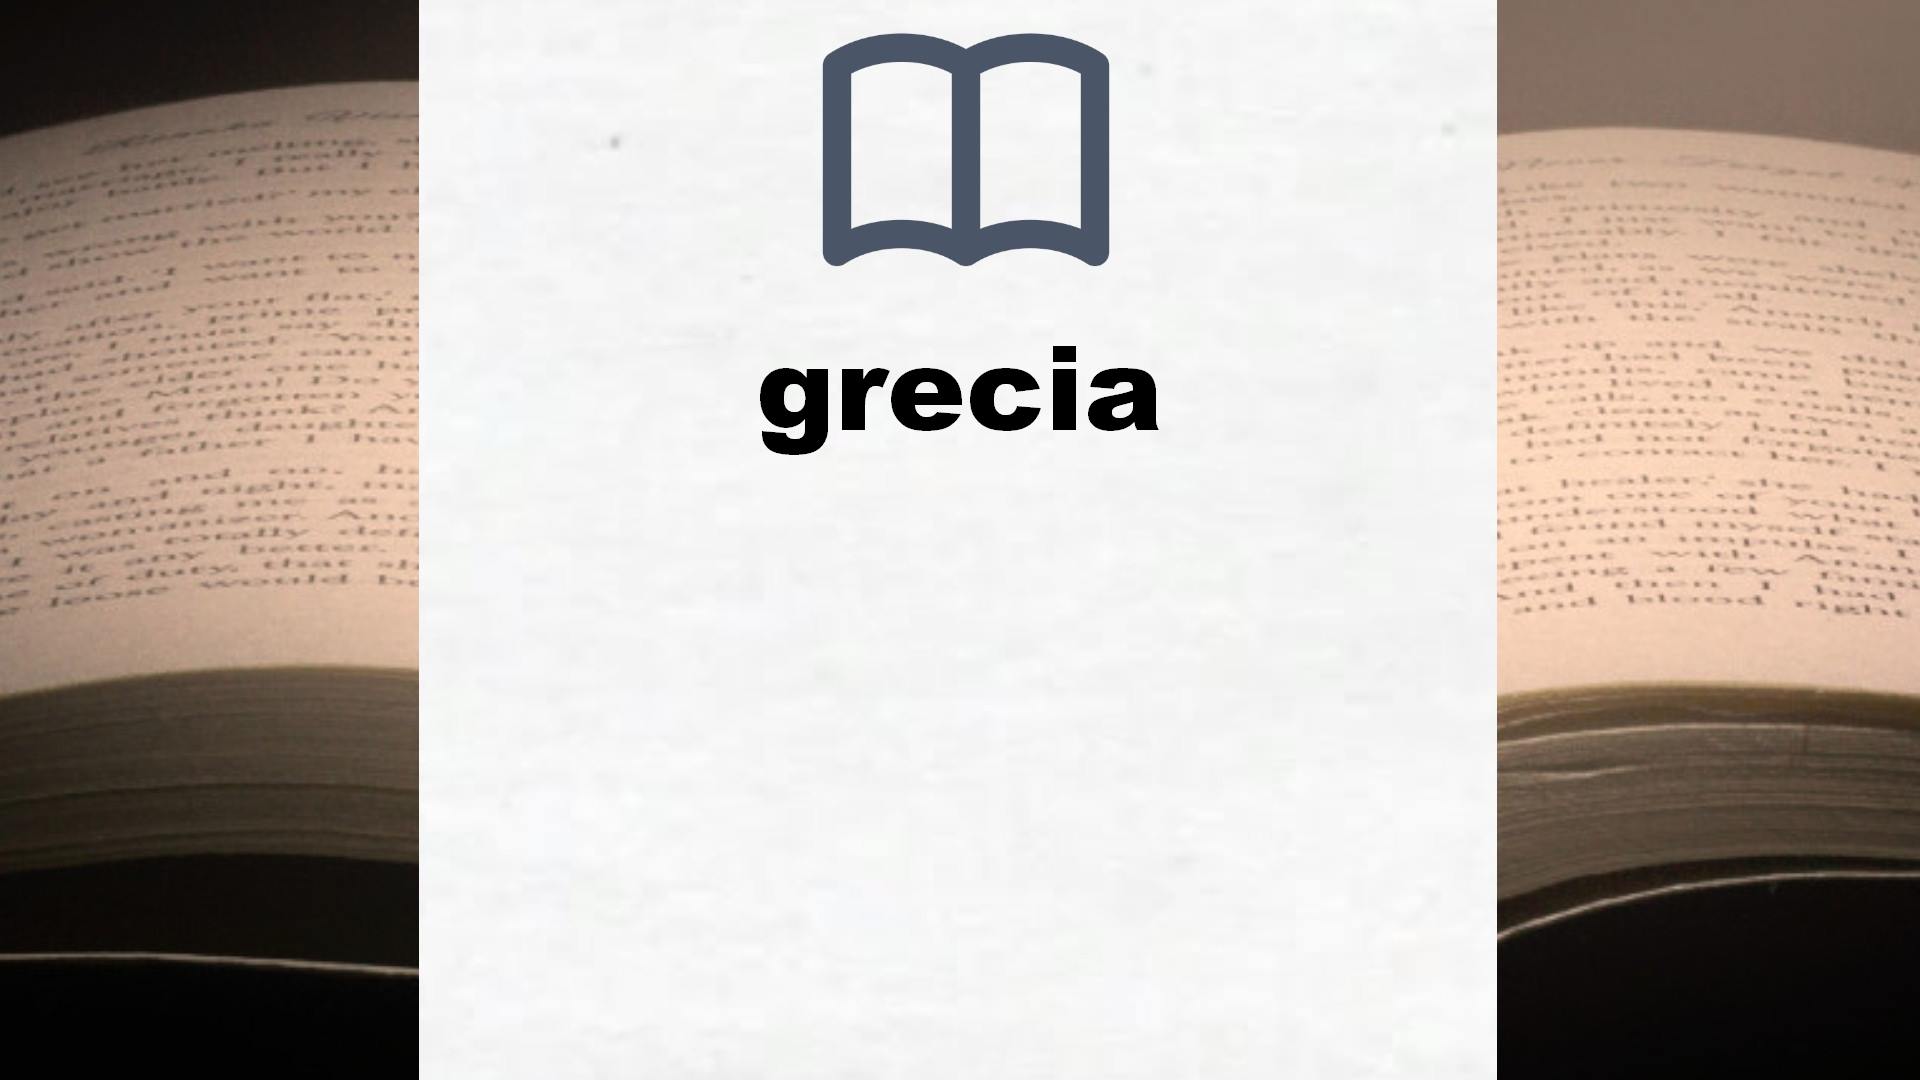 Libros sobre grecia